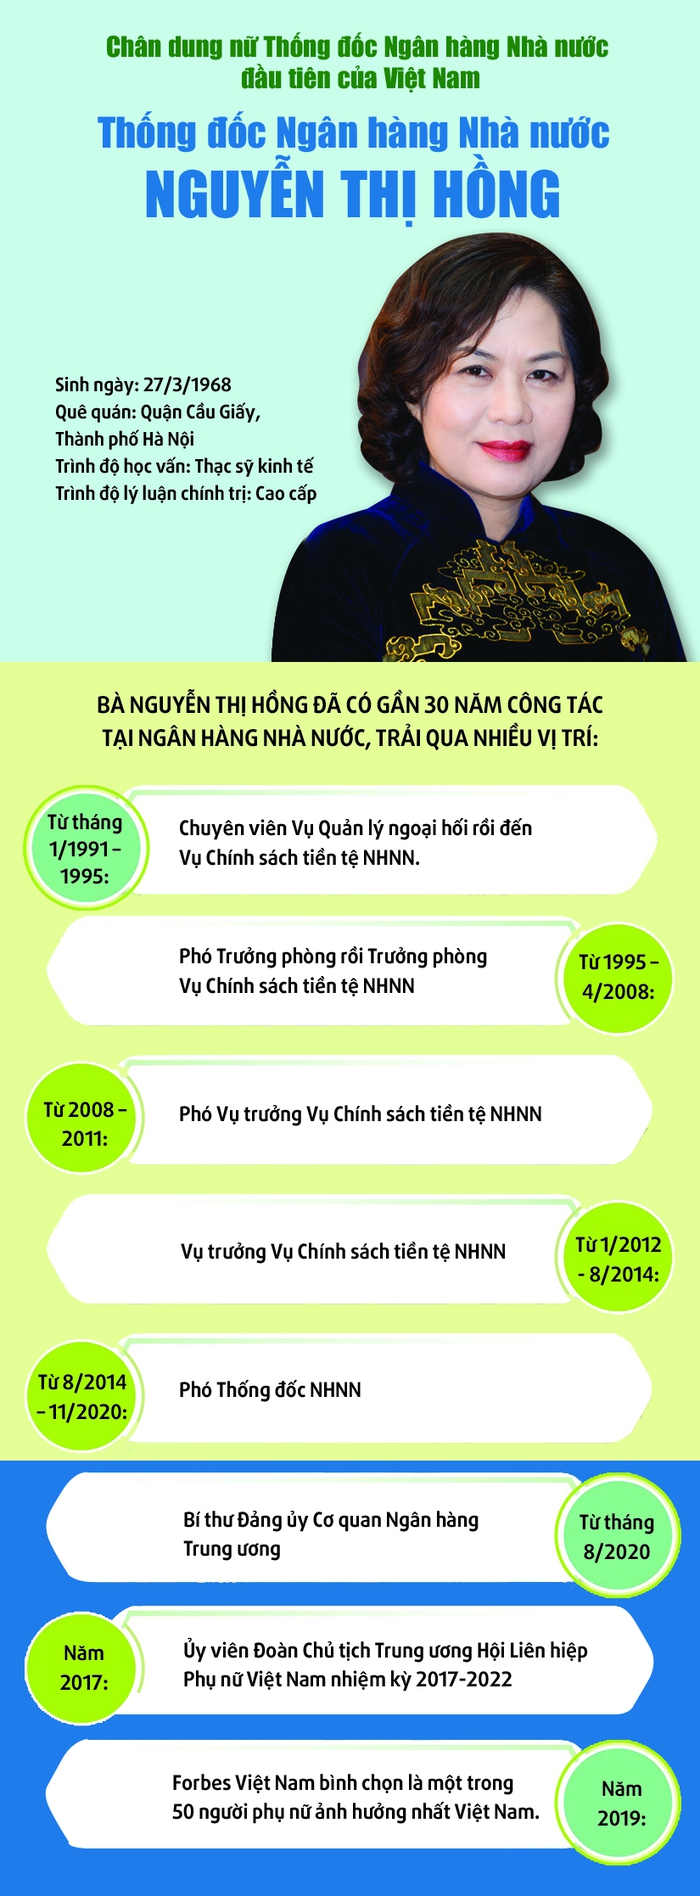 Chân dung nữ Thống đốc Ngân hàng Nhà nước Việt Nam đầu tiên Nguyễn Thị Hồng - Ảnh 1.